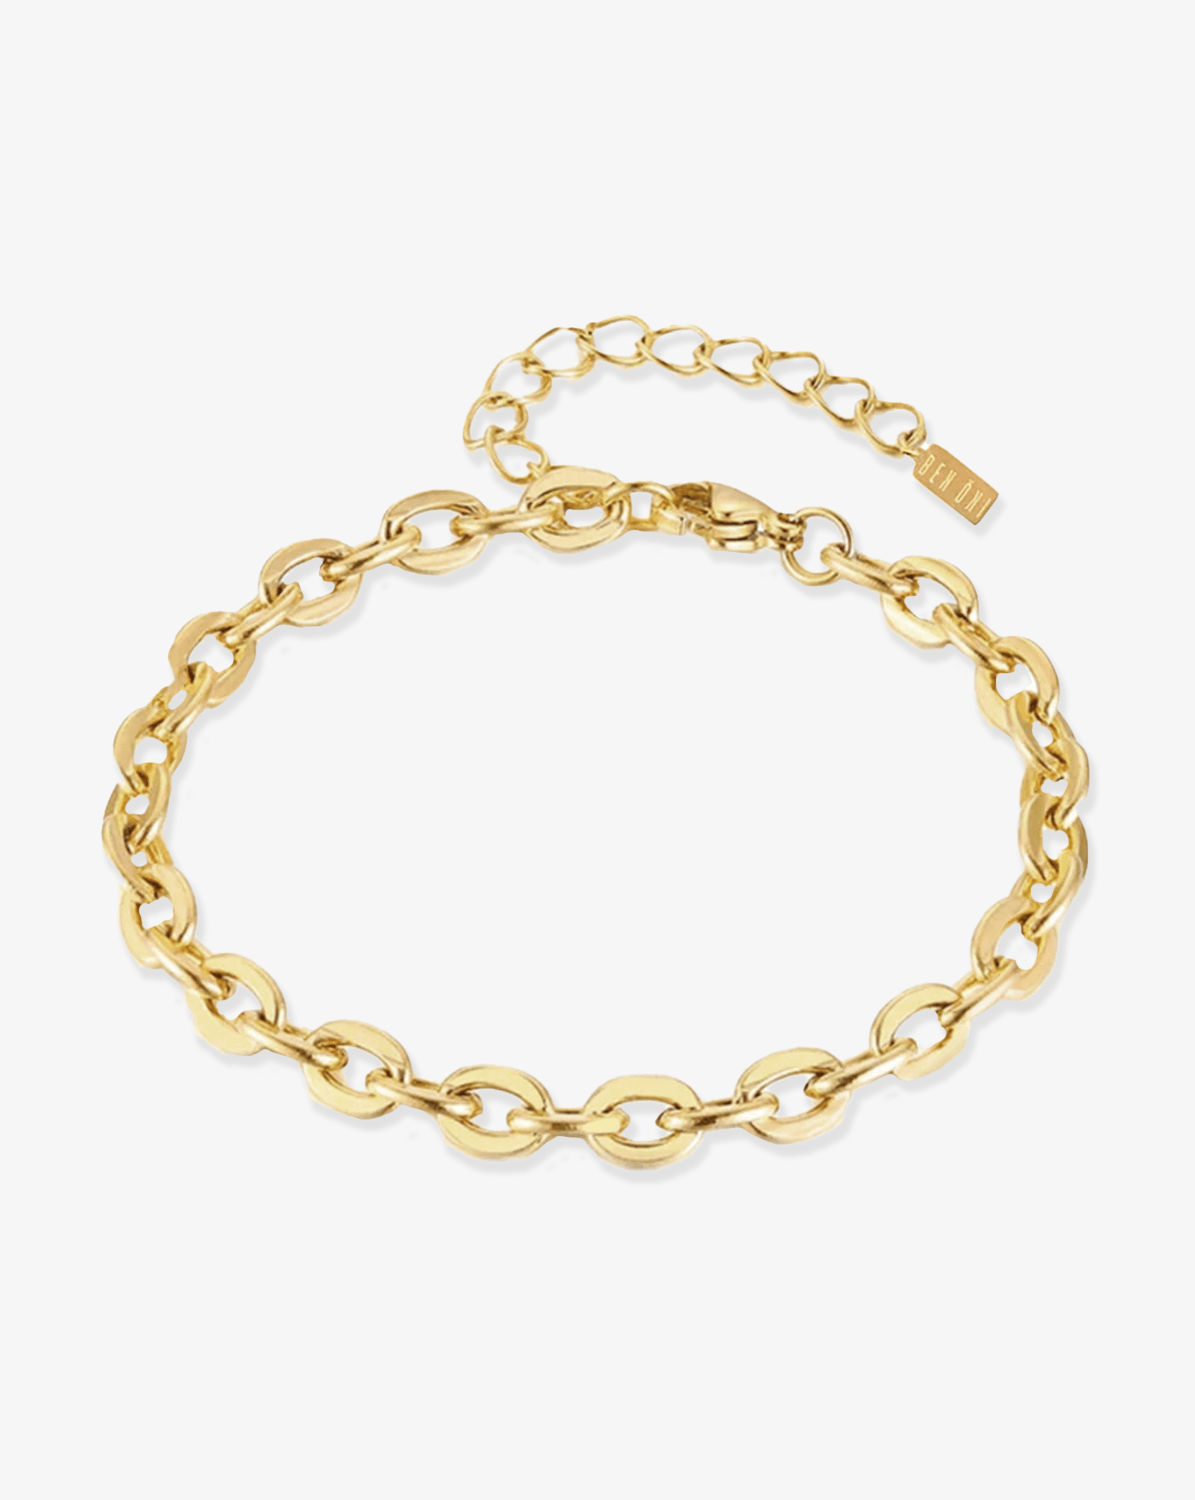 Shannon Cable Chain Bracelet